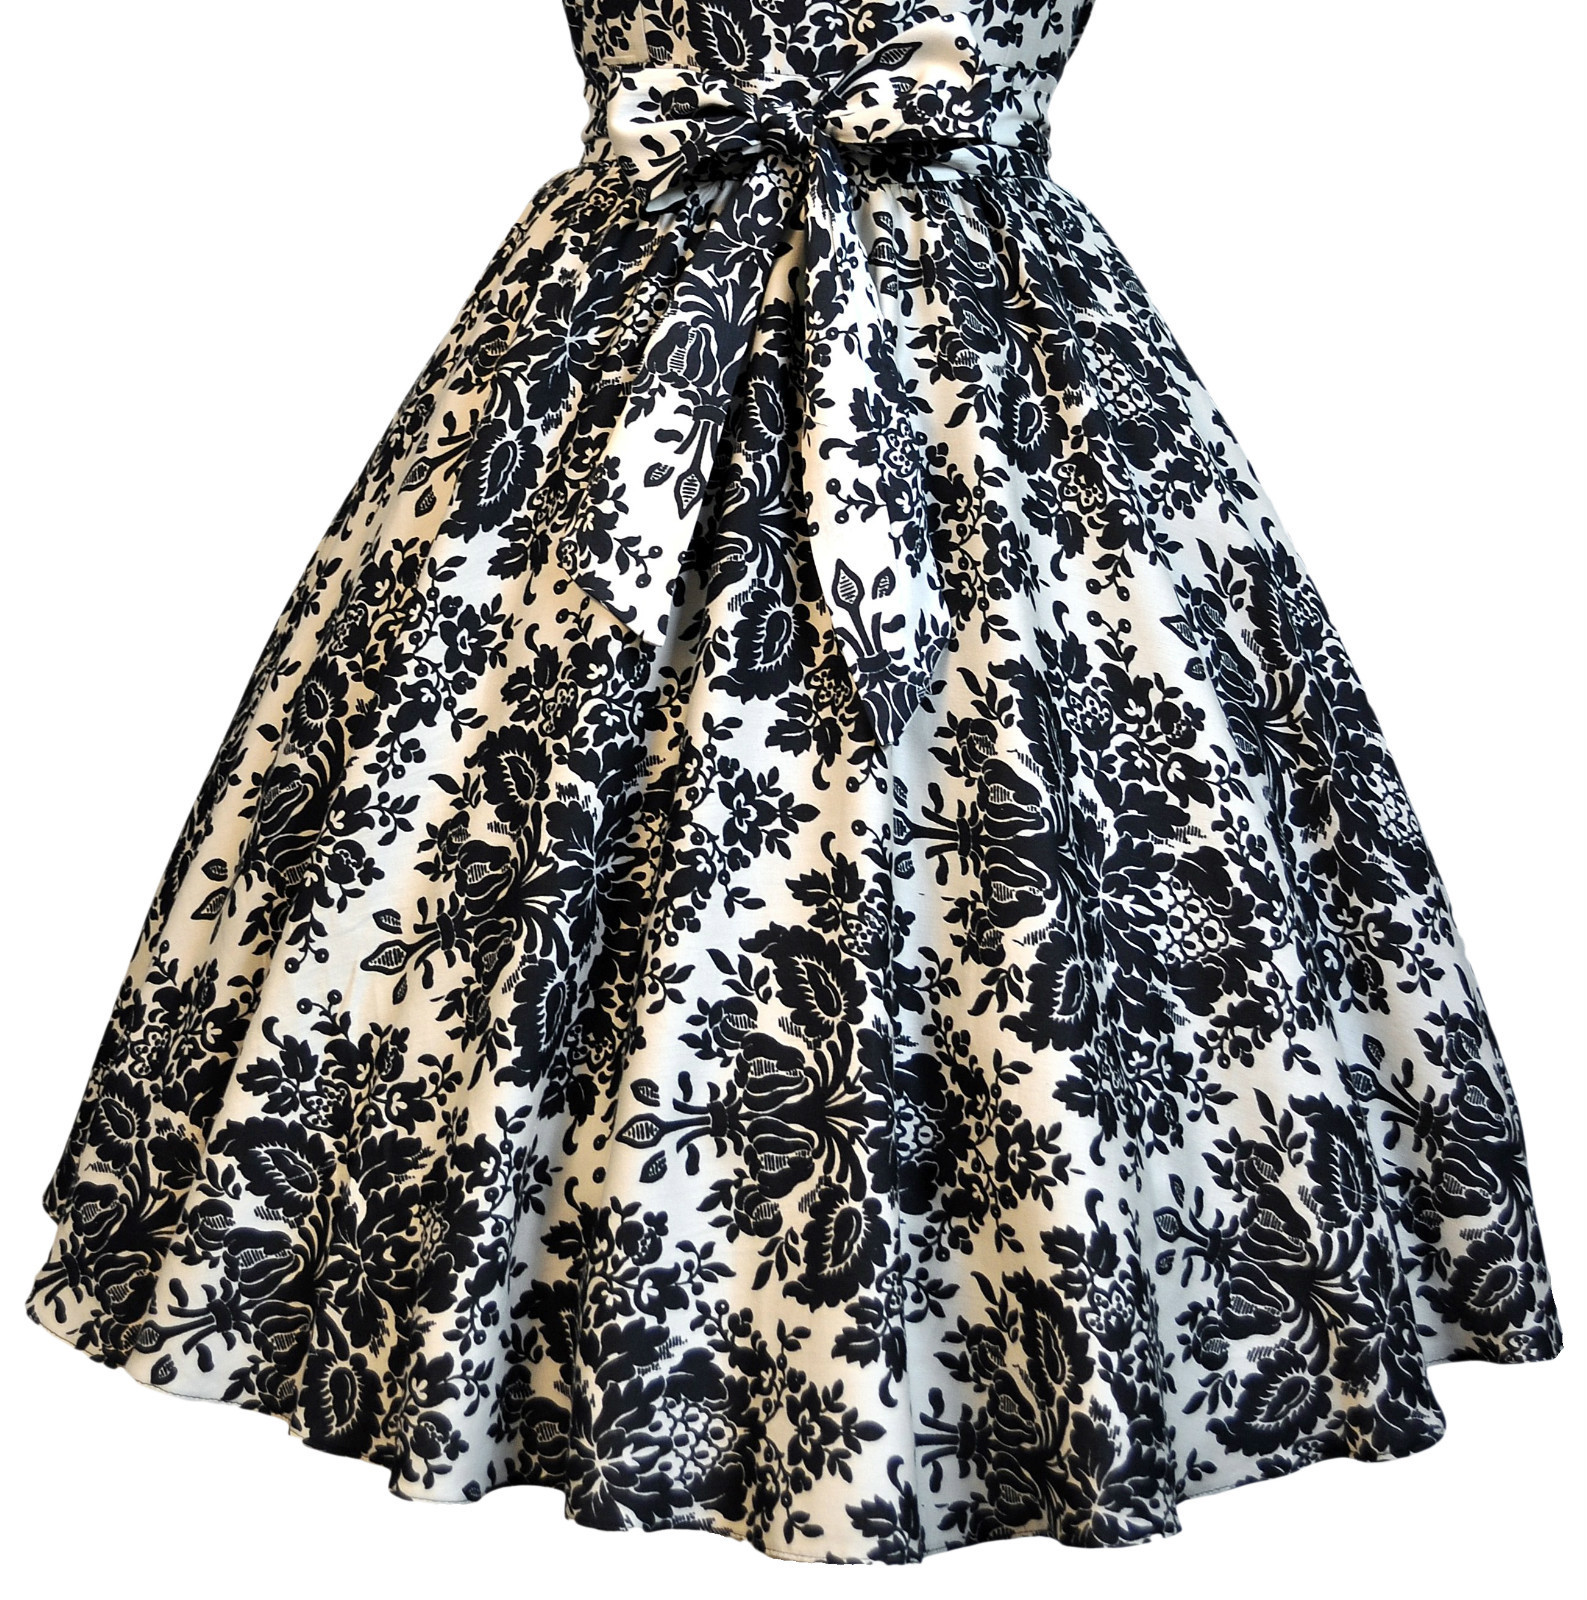 damask_50s_dress_skirt